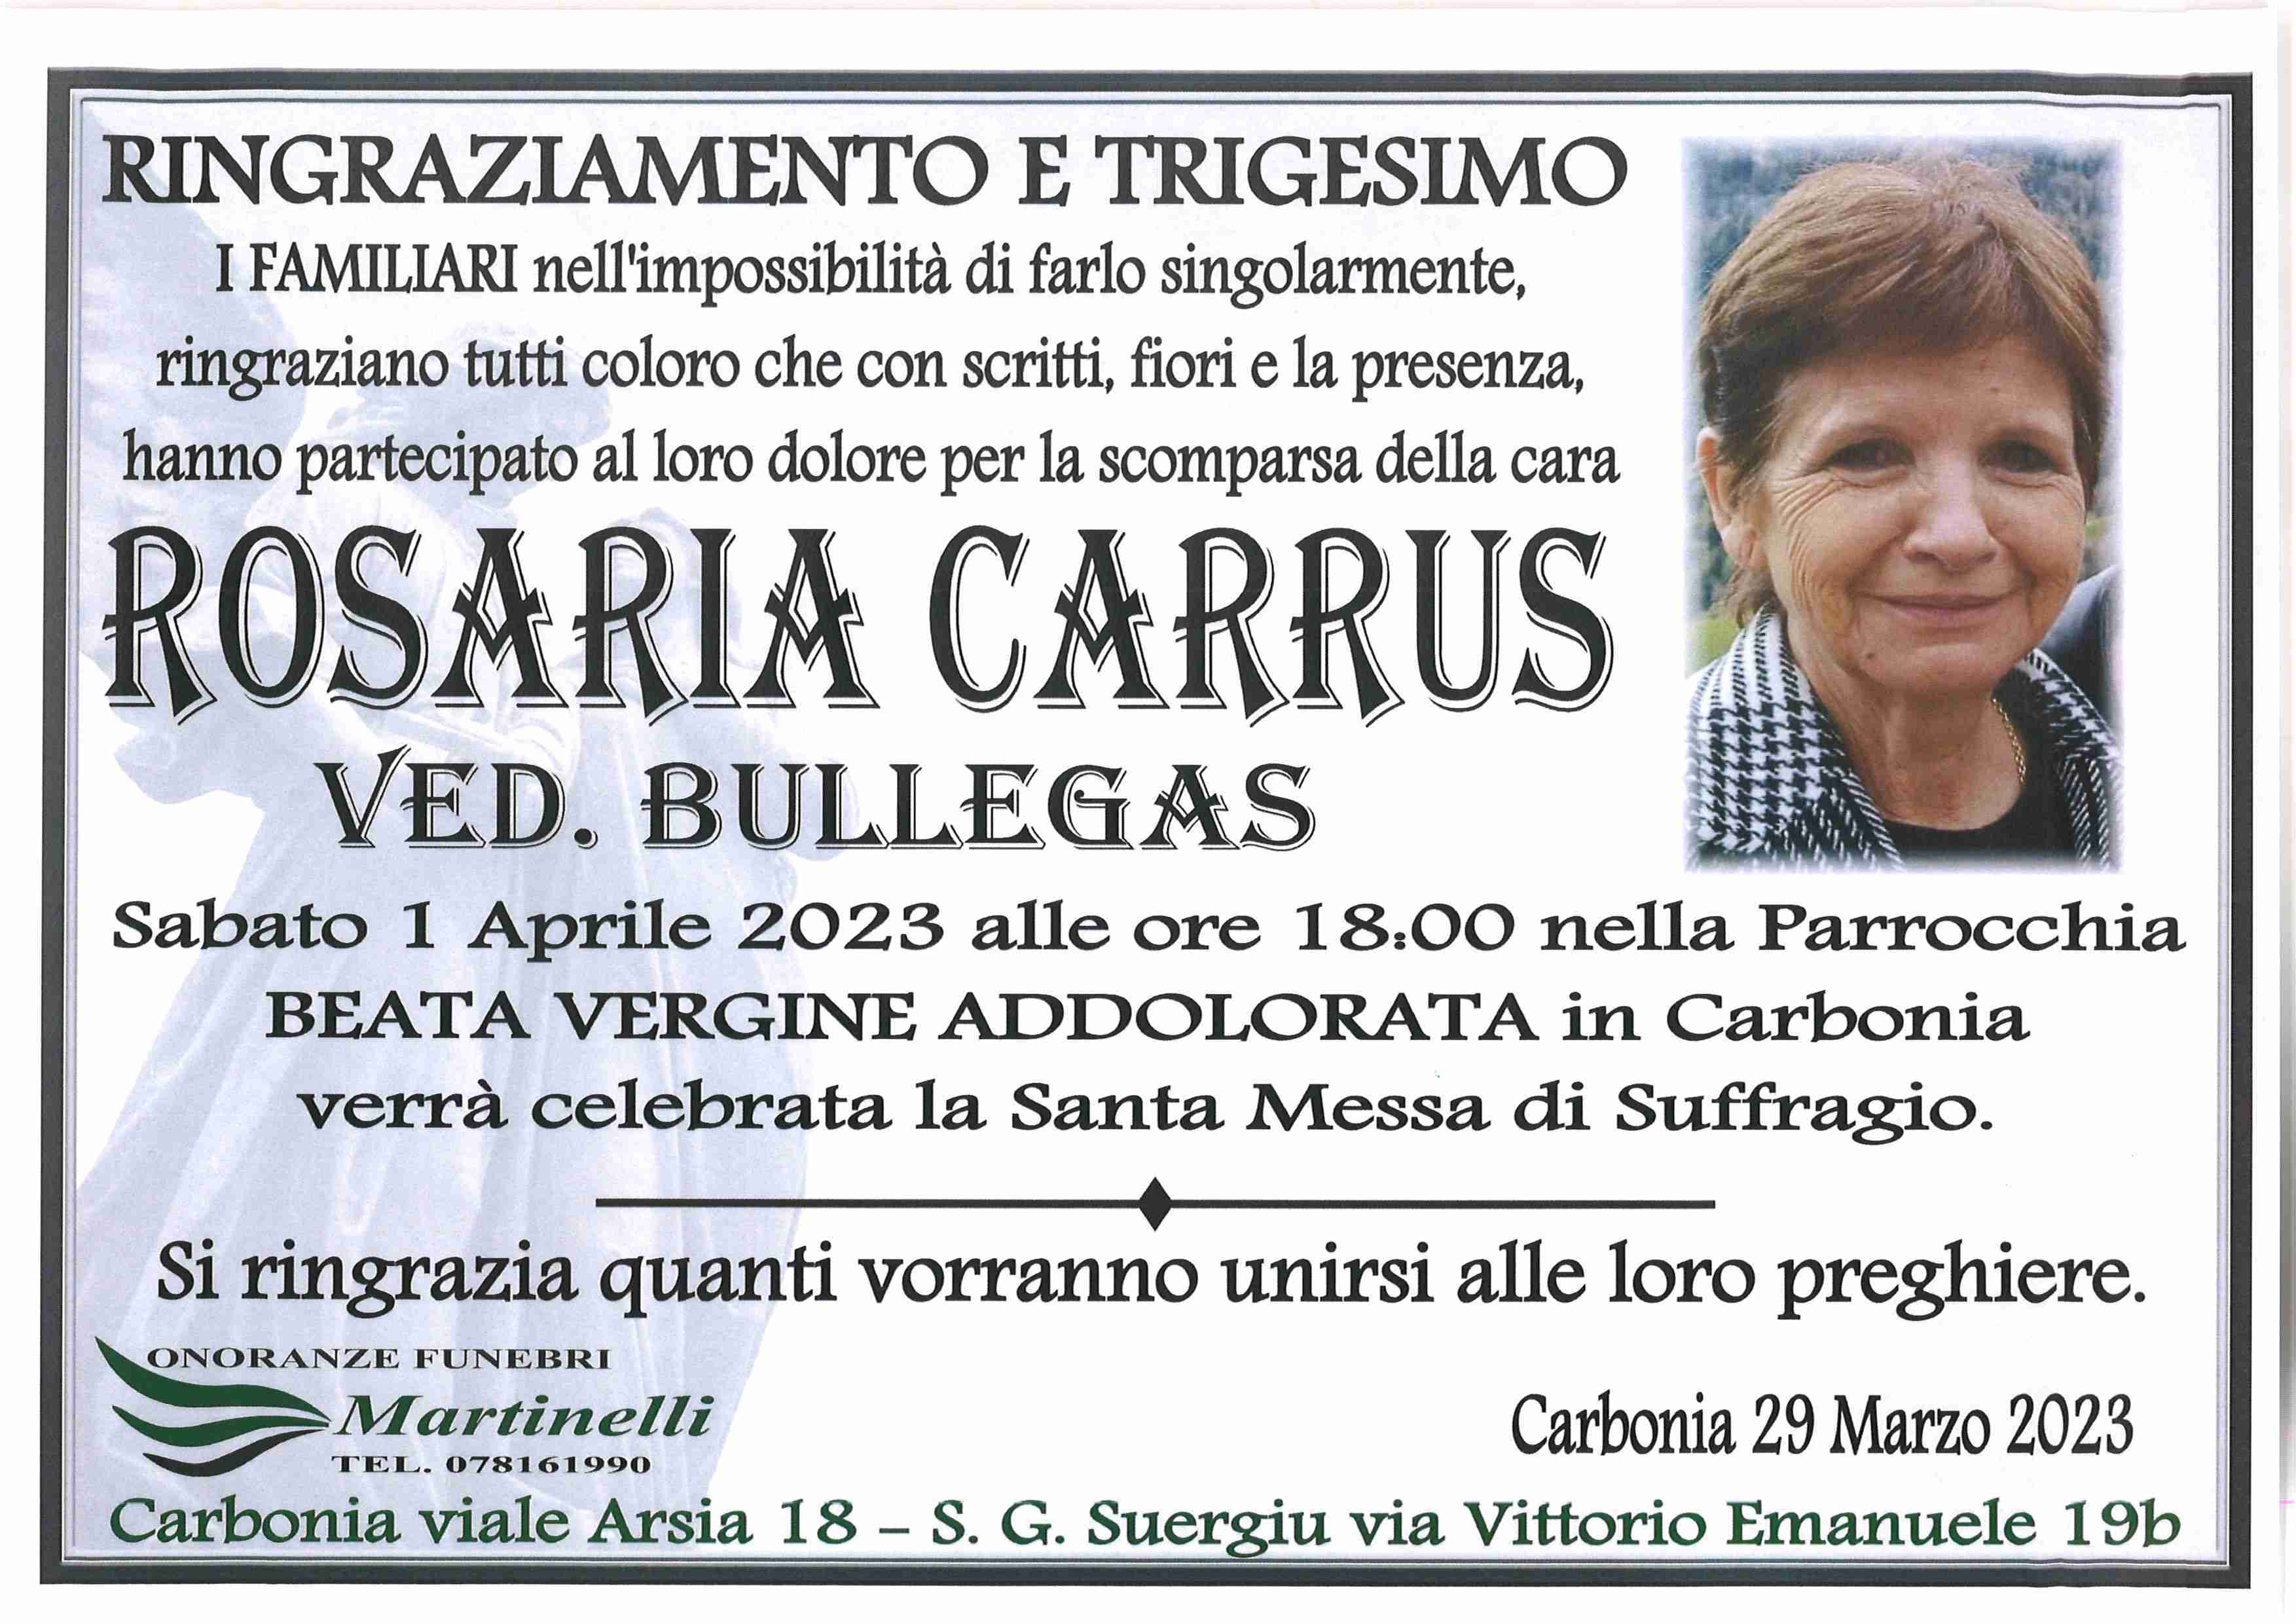 Rosaria Carrus